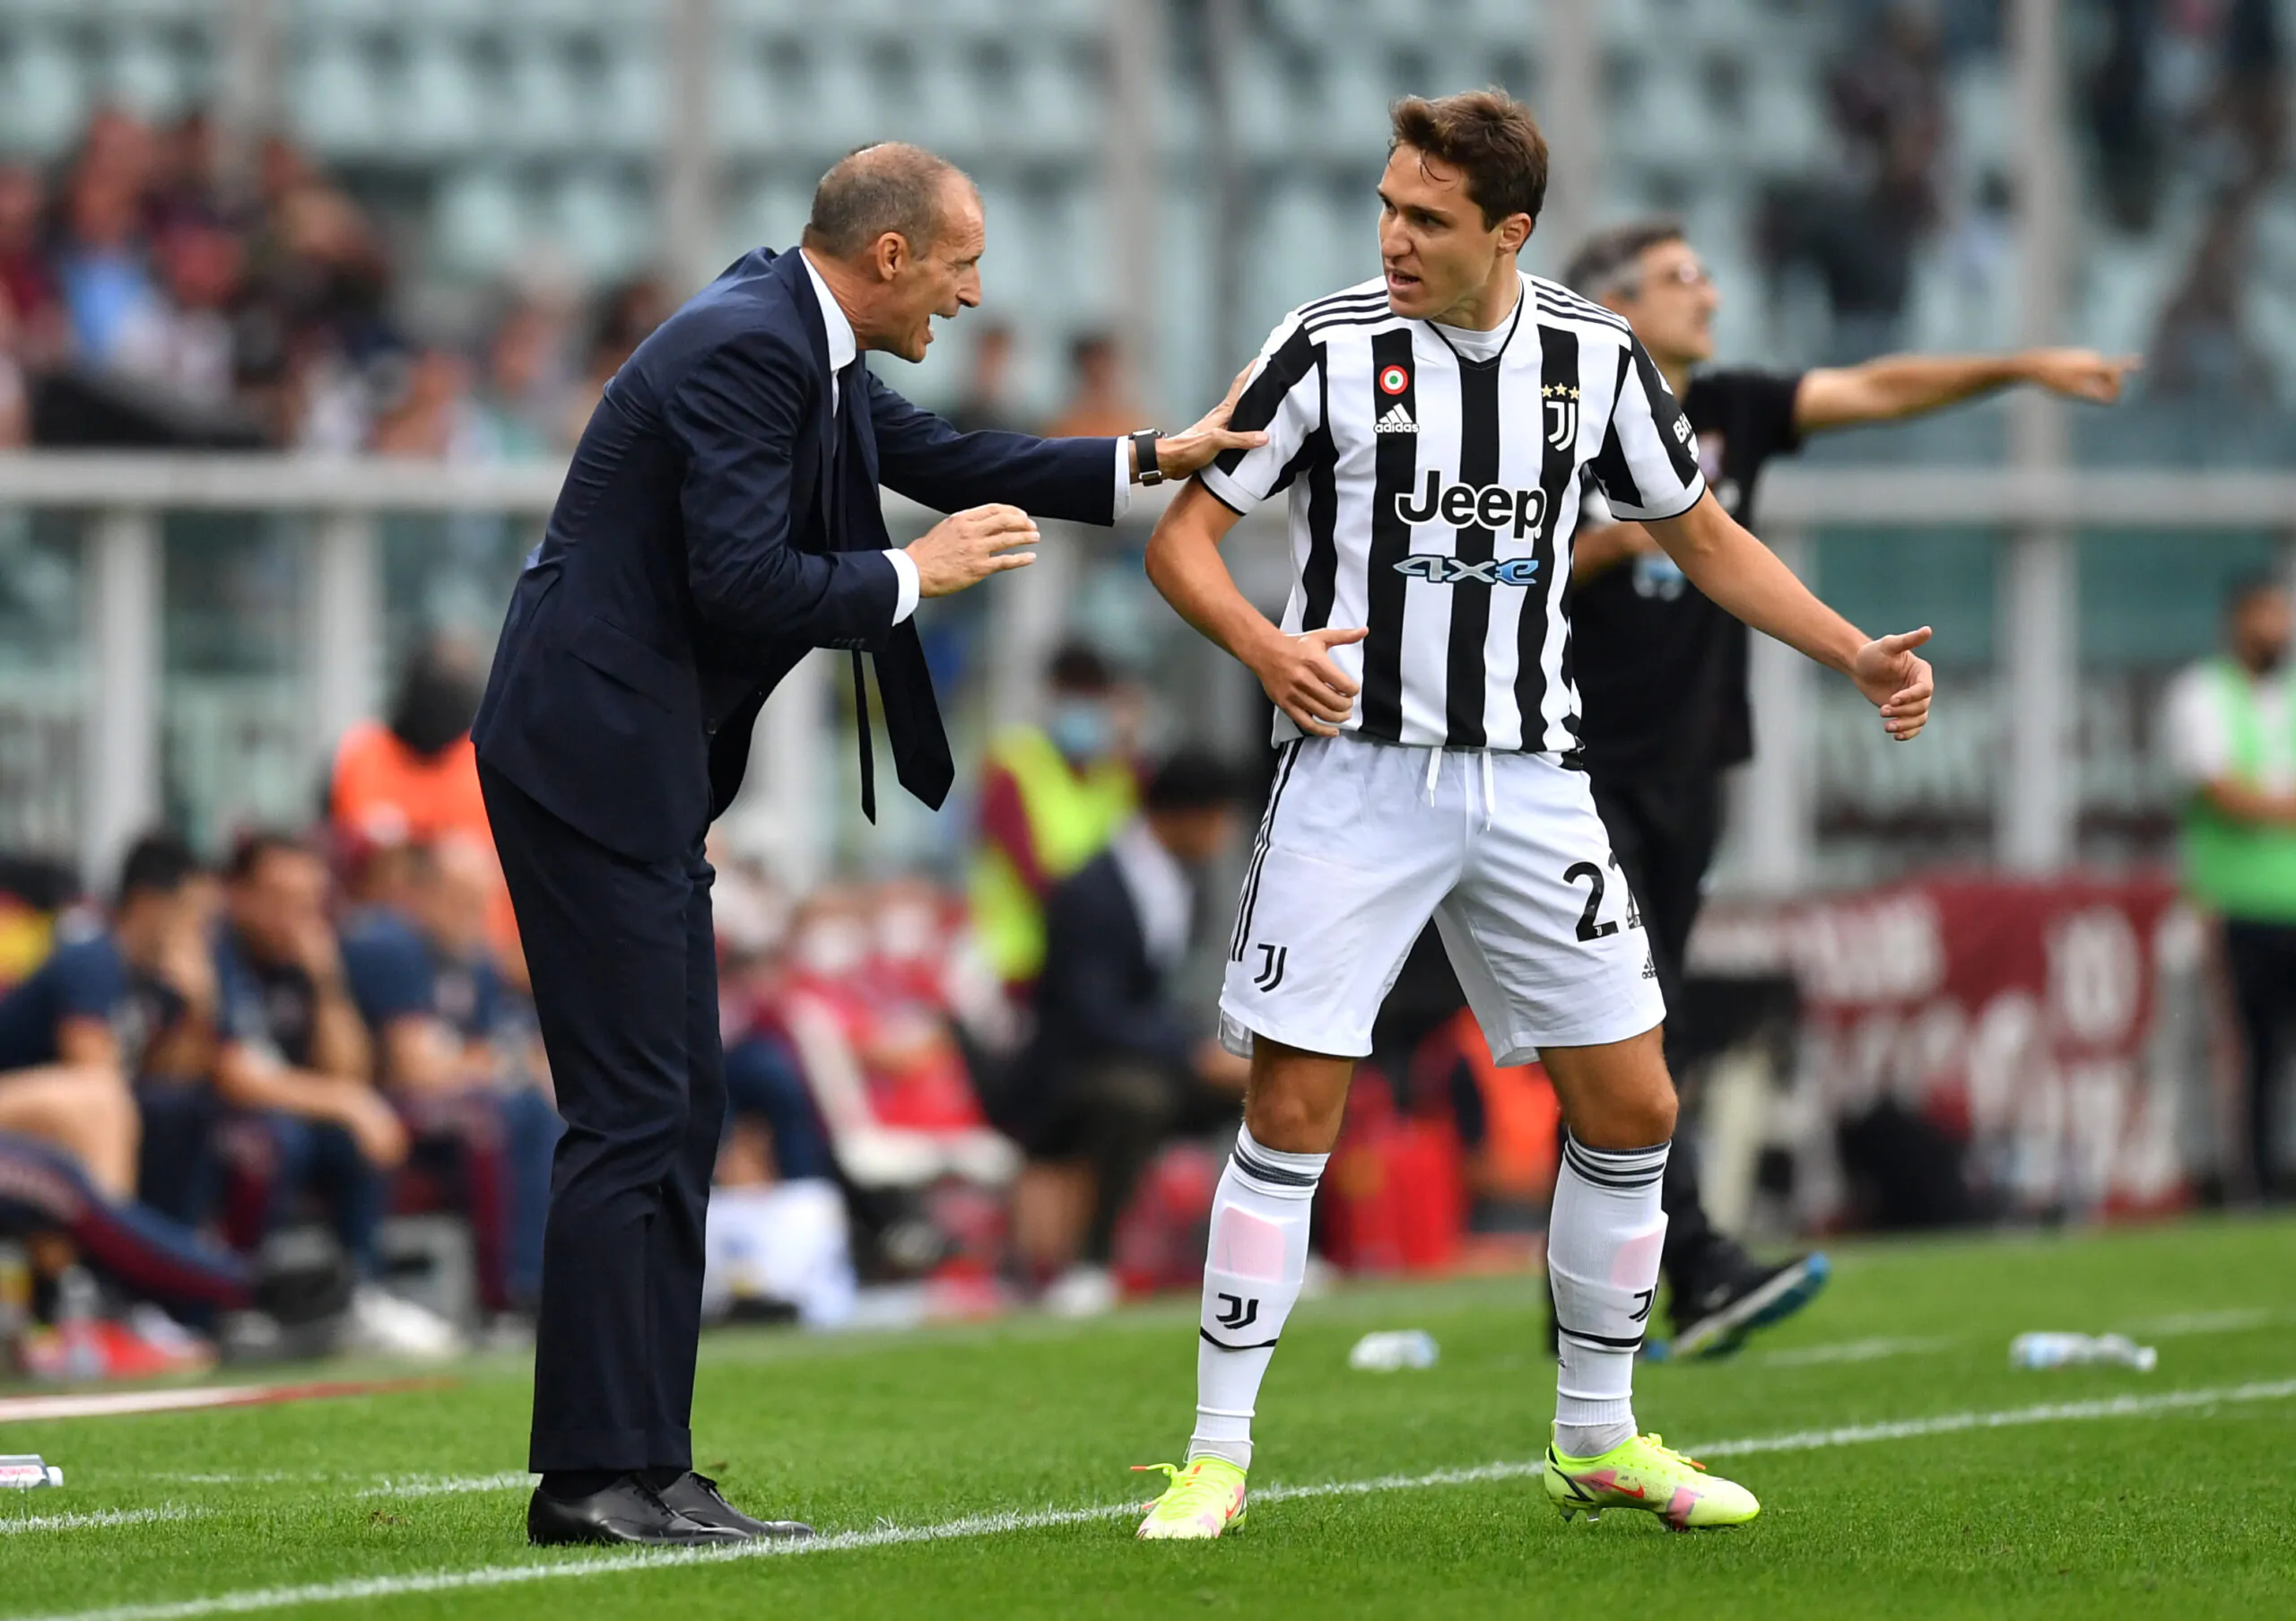 L’analisi del giornalista: “Alla Juventus manca il centravanti!”